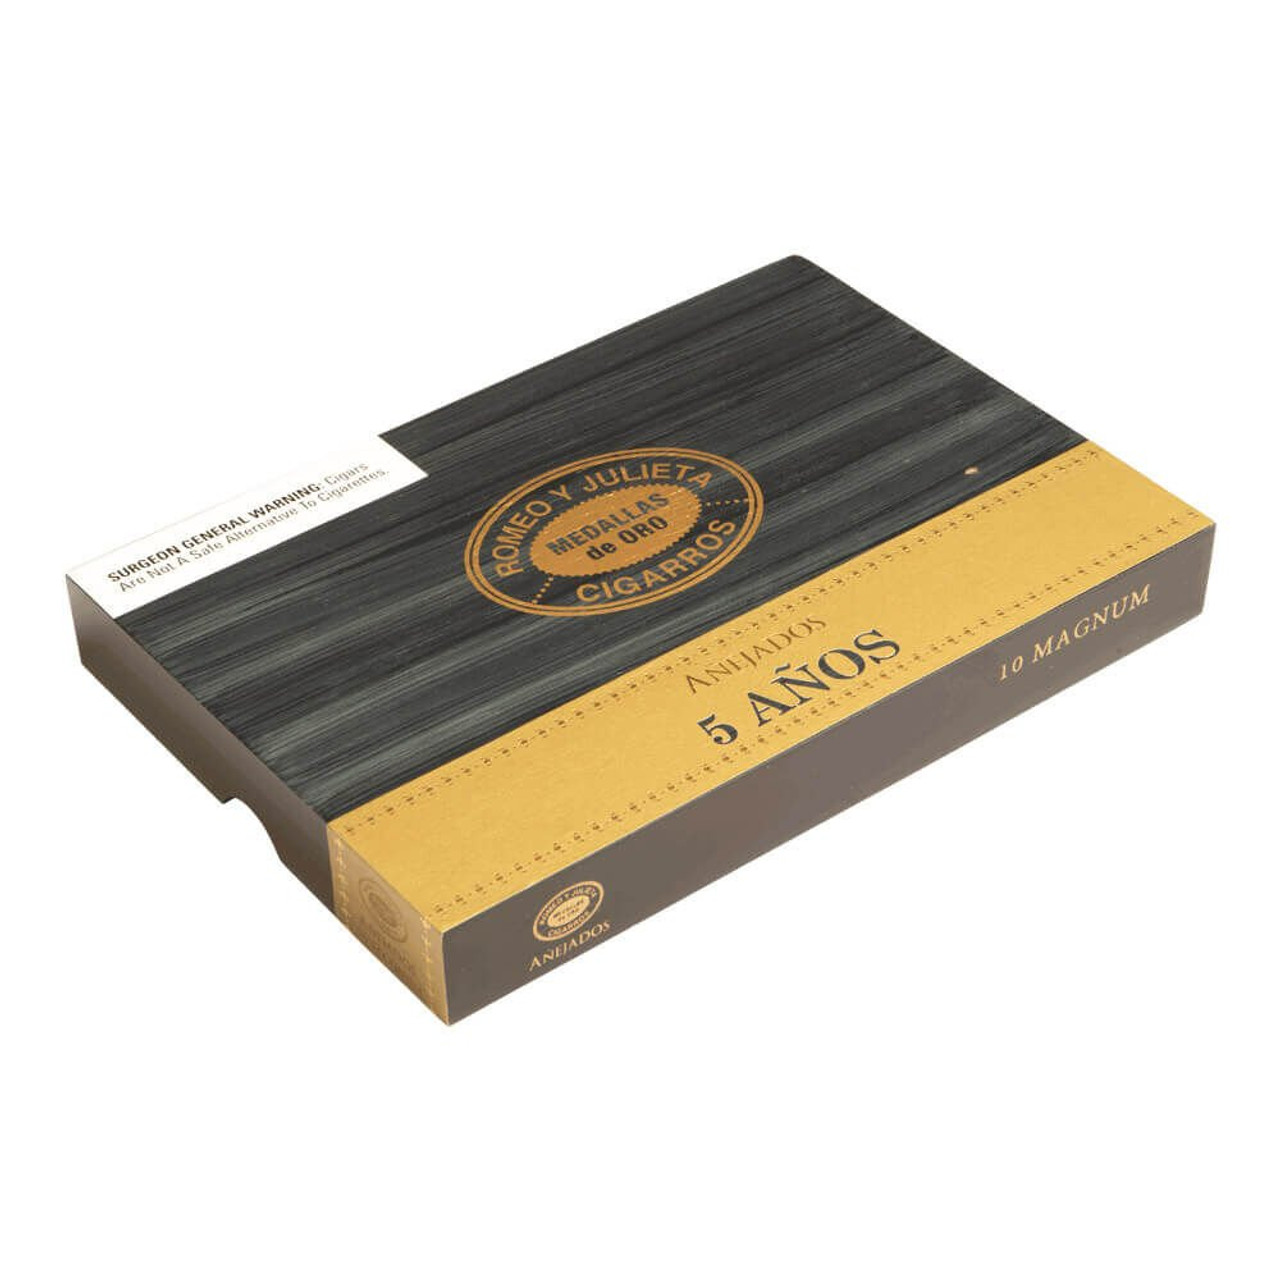 Romeo y Julieta Anejados Robusto Cigars - 5 x 50 (Box of 10)